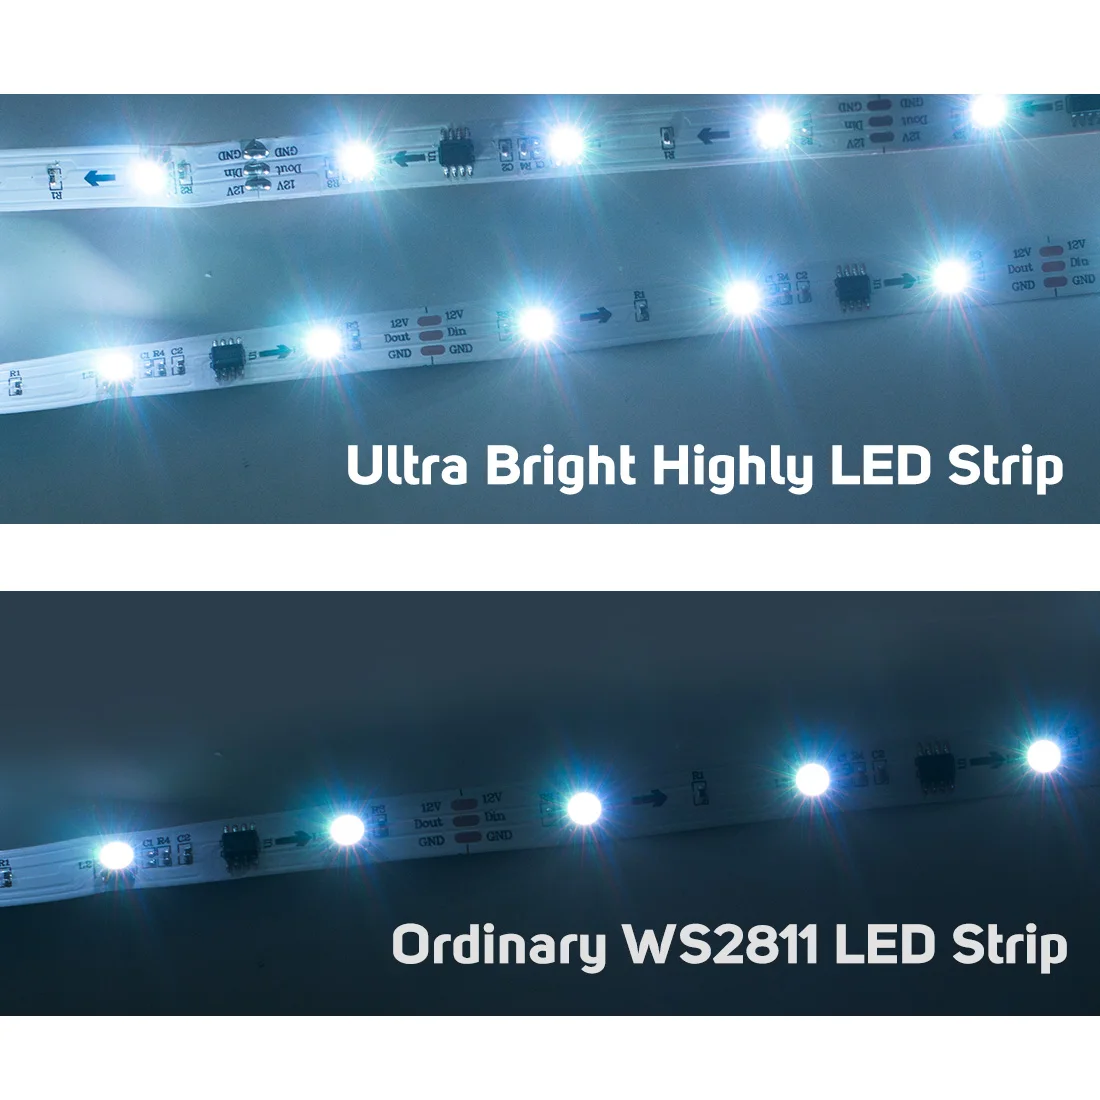 5 M WS2811 Светодиодные ленты DC12V ультра яркие красные/зеленые/высокоэффективный 5050 Светодиодные светильники внешнего закрепления с компонентным видеосигналом высокий свет адресуемый 30/48/60 светодиодный s/m Белый/черный печатных плат